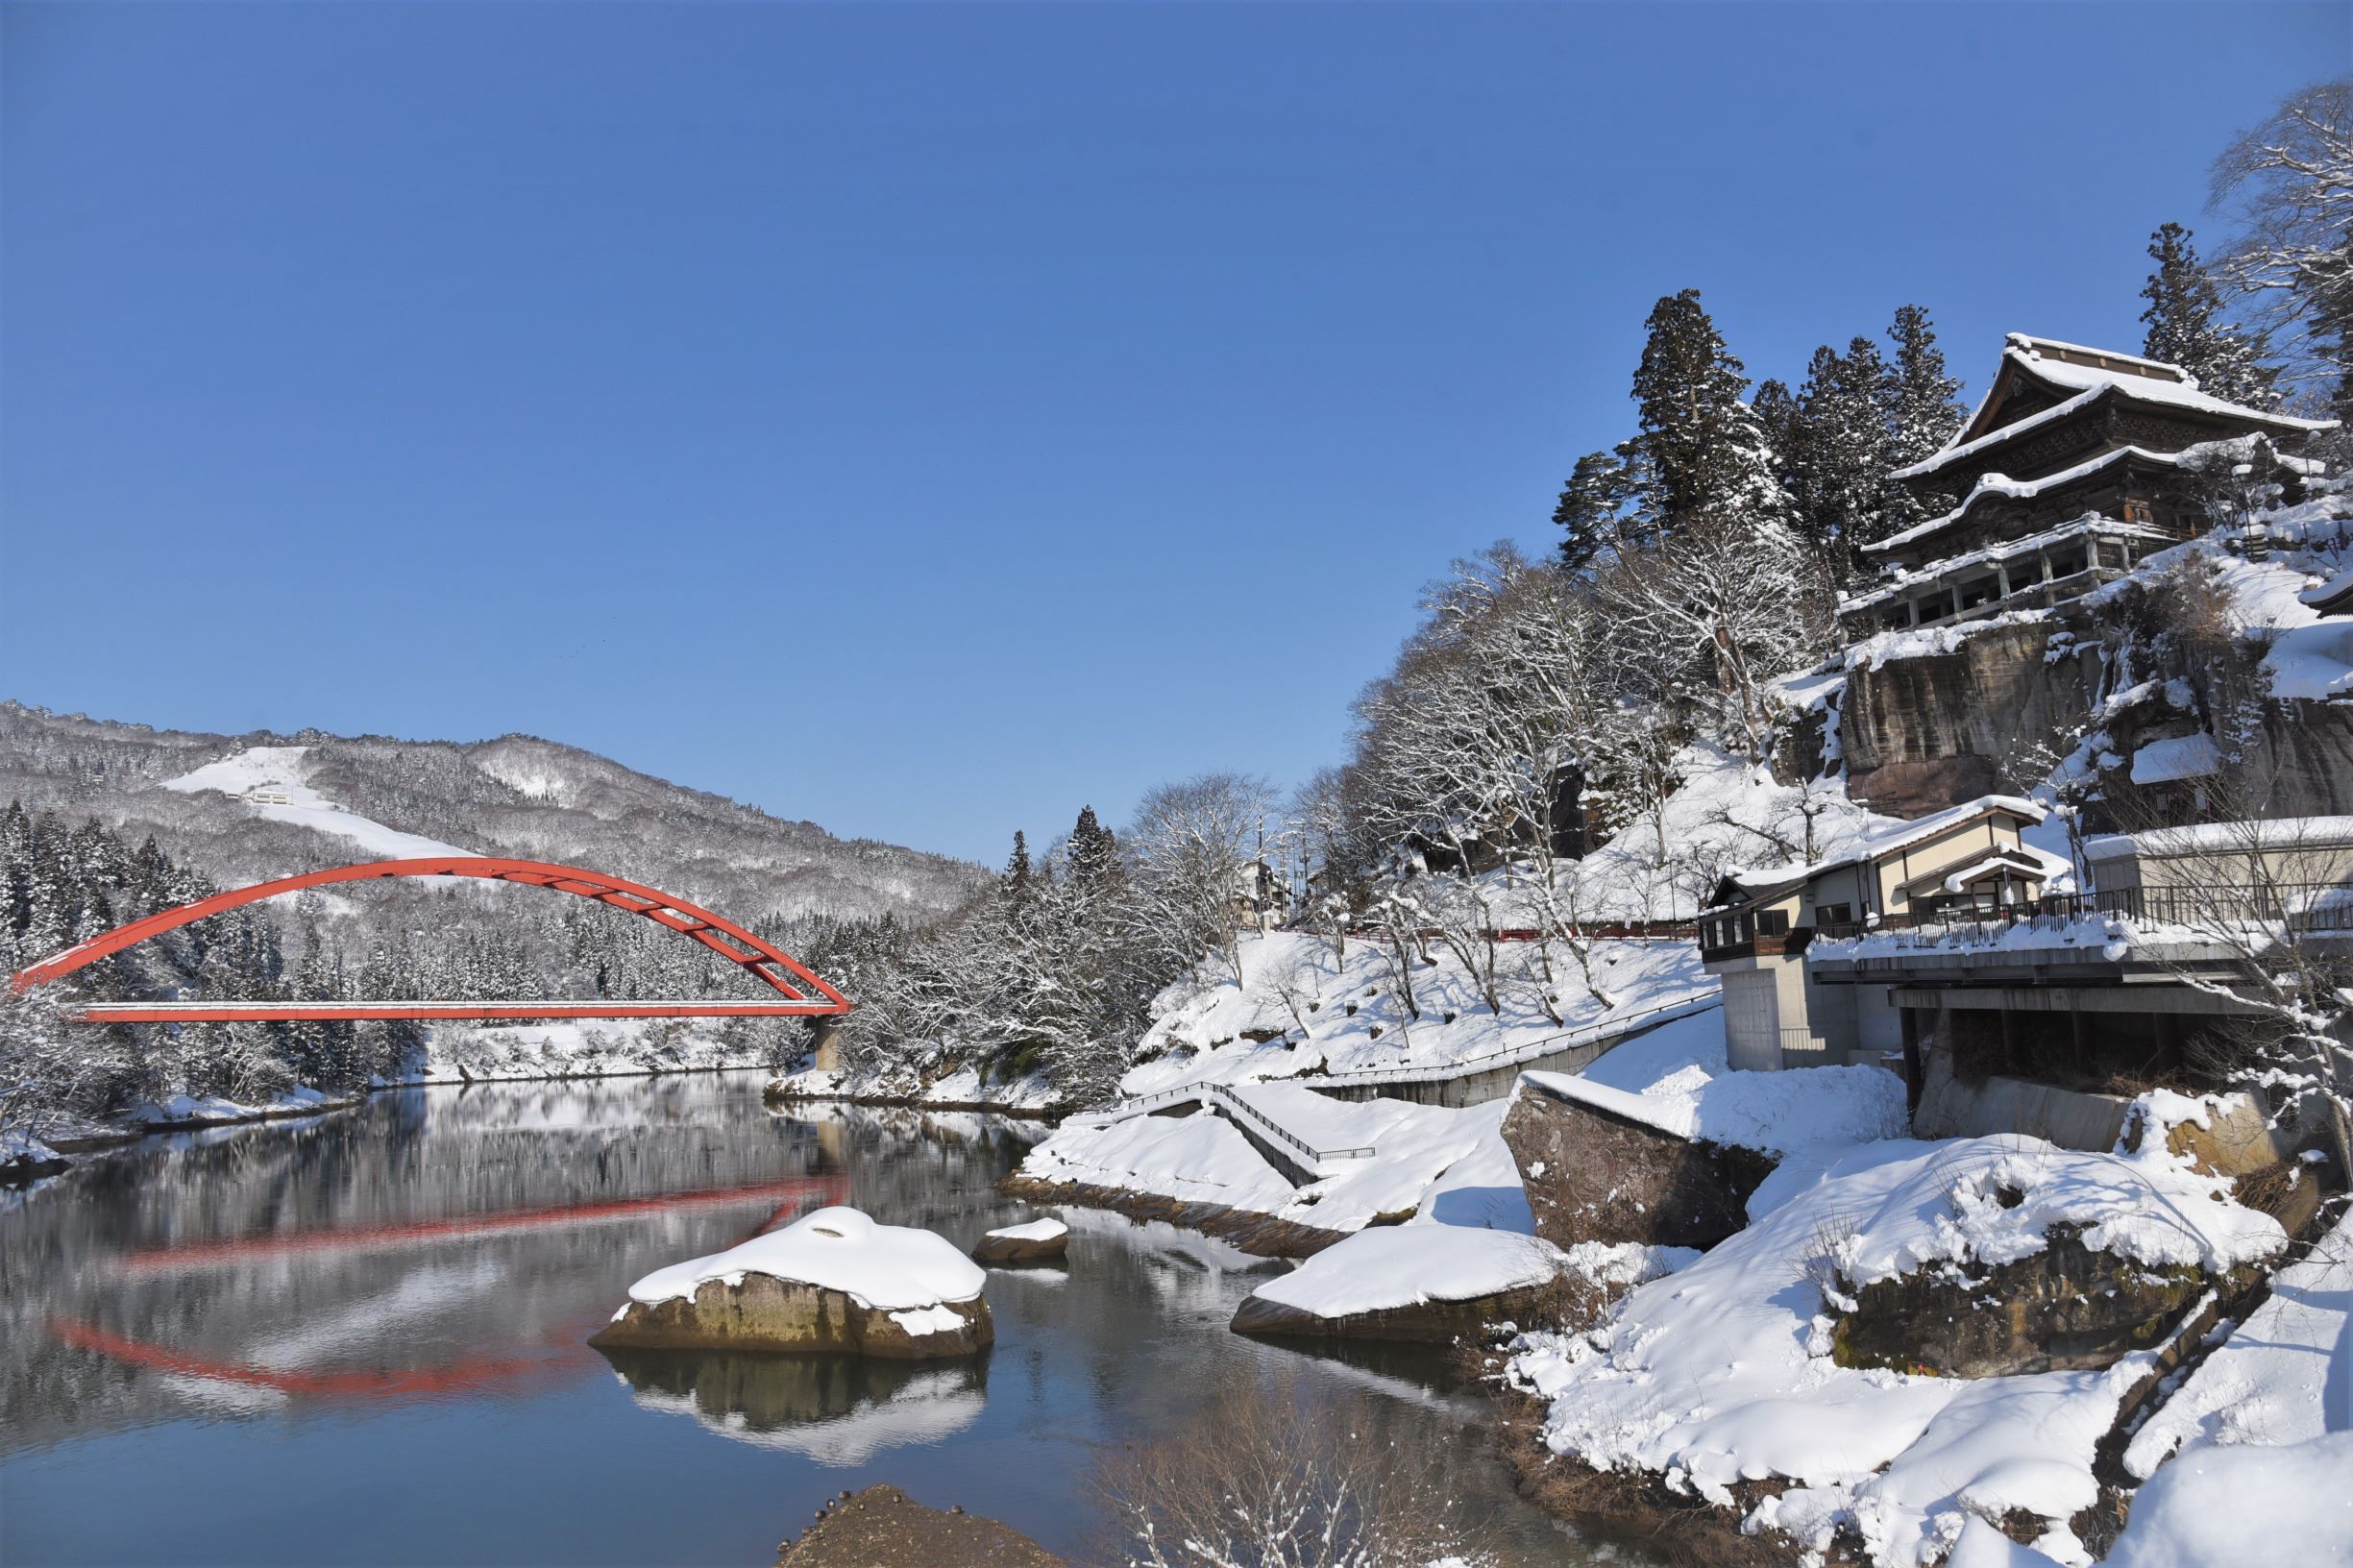 【冬】柳津町の冬は雪が多く、美しい白銀の世界を見ることができます。